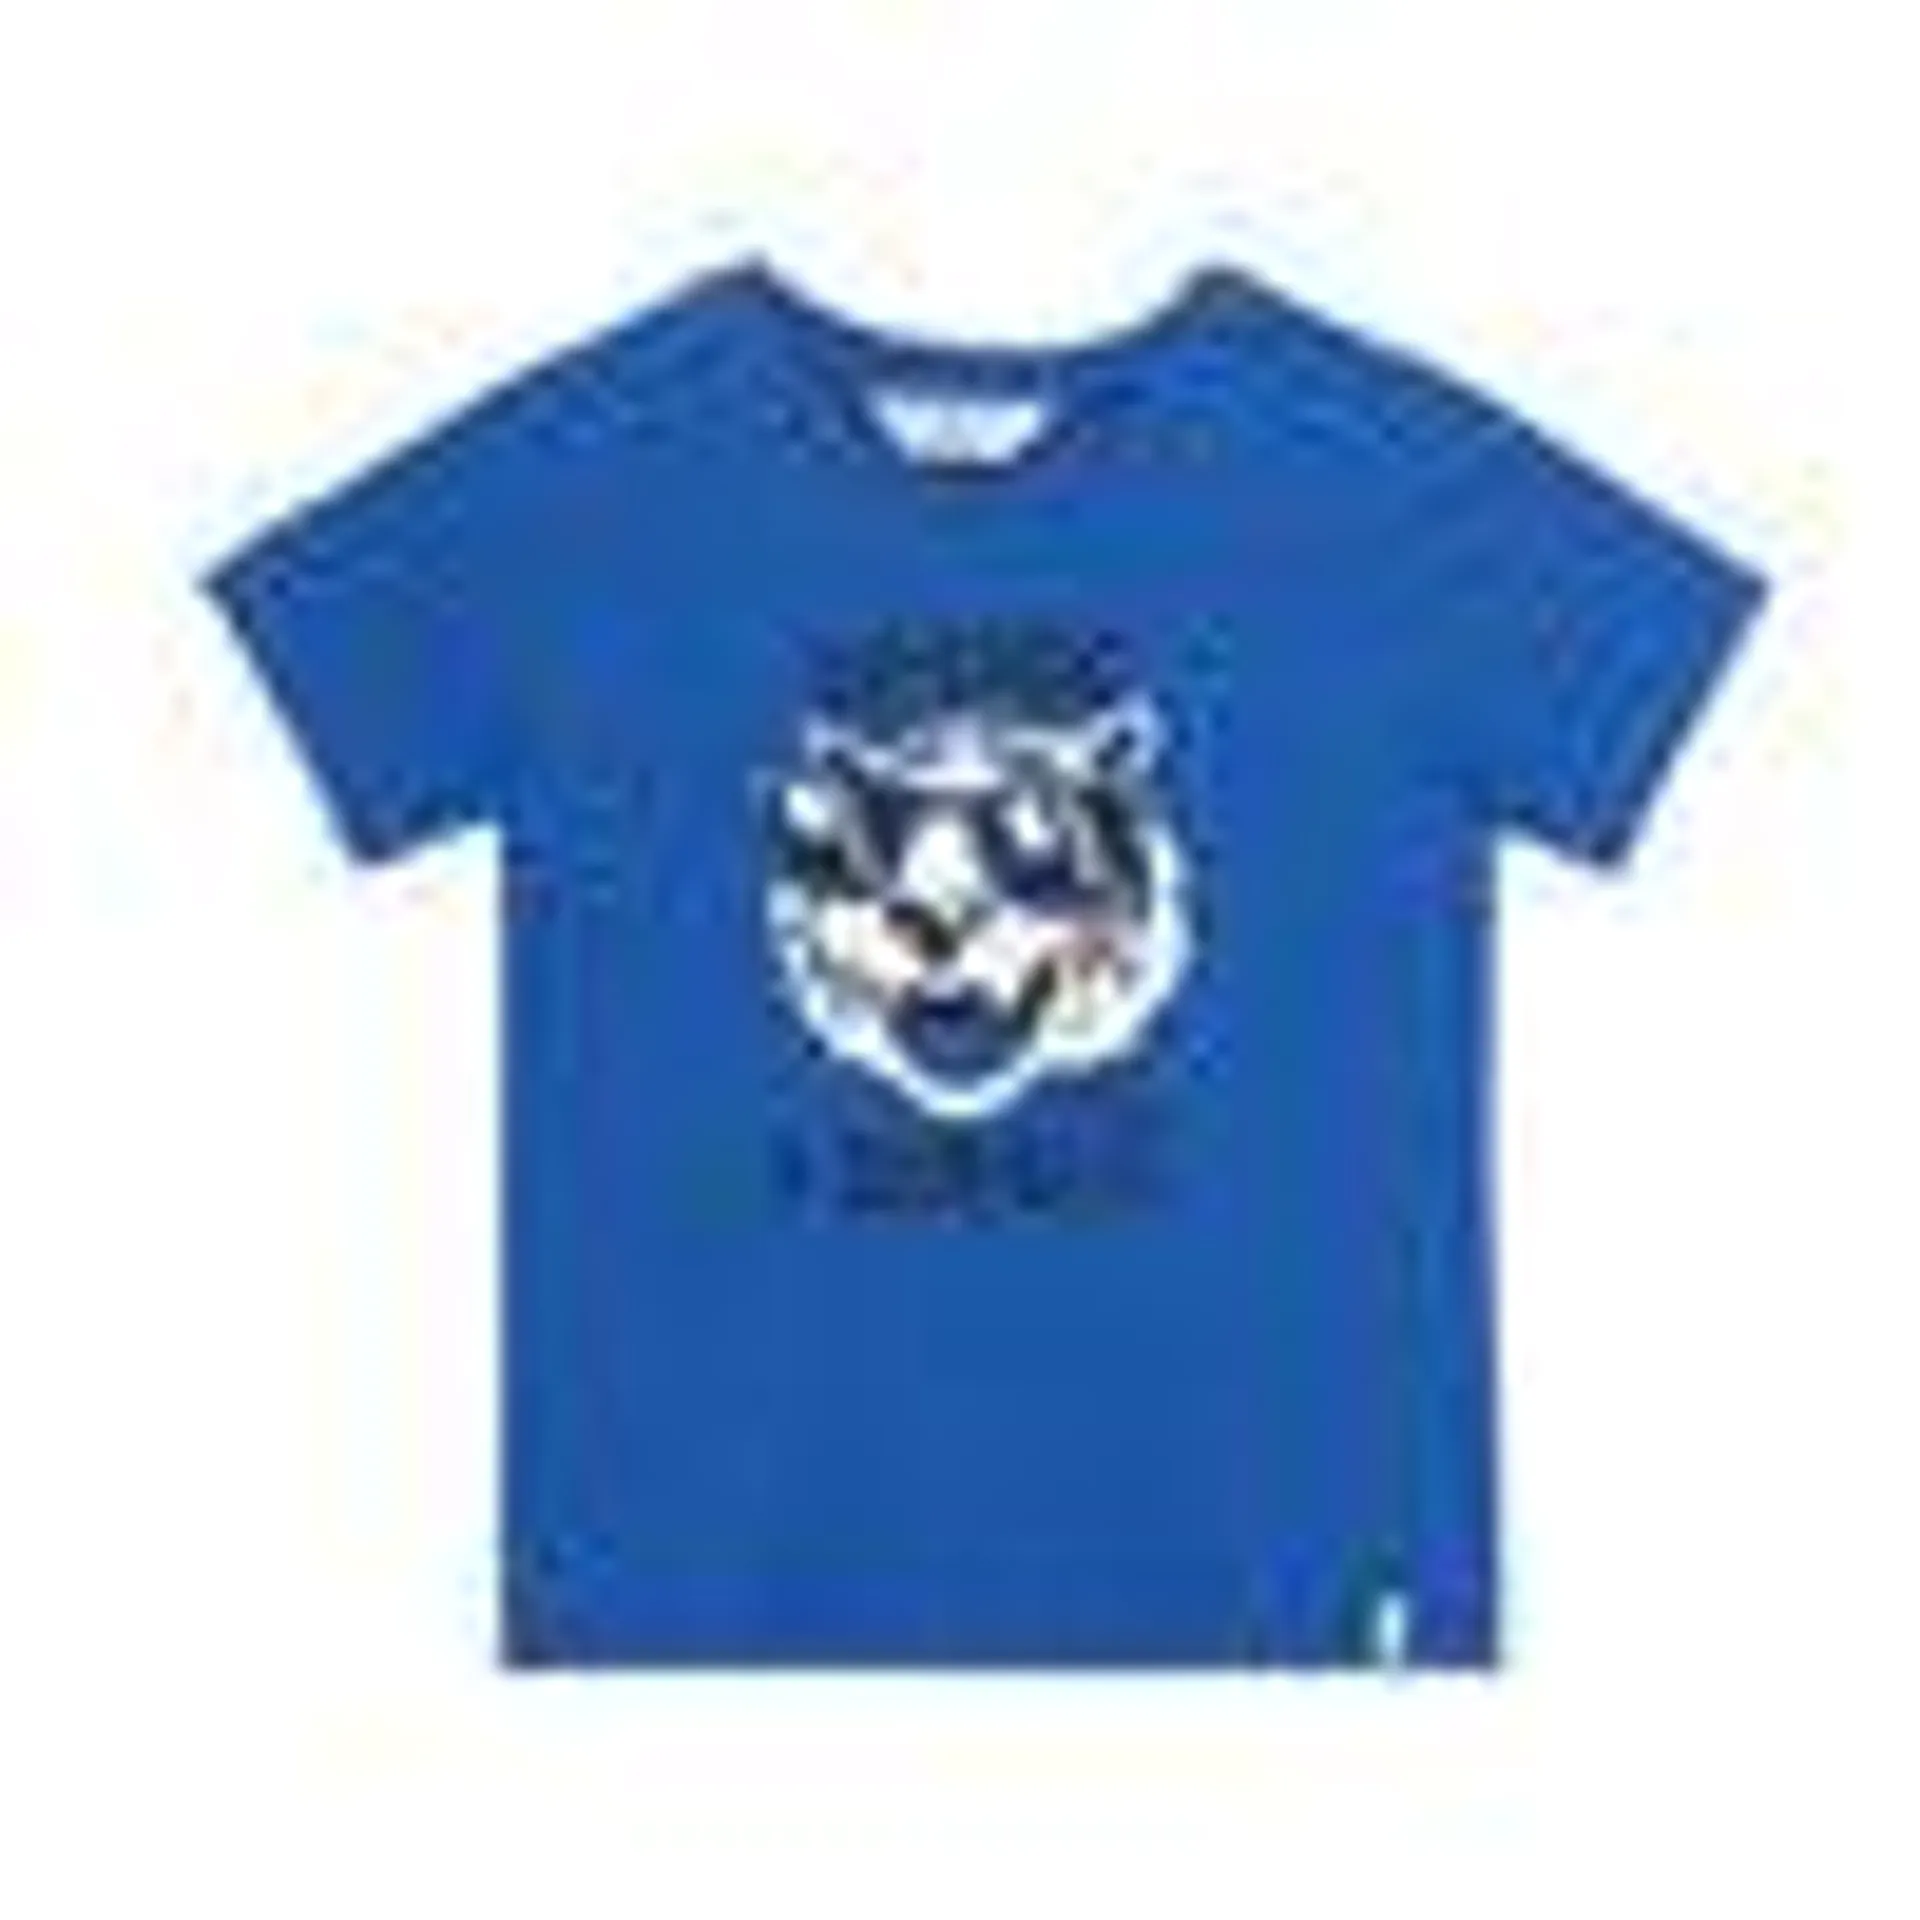 Camiseta azul Juan manga corta para bebé niño